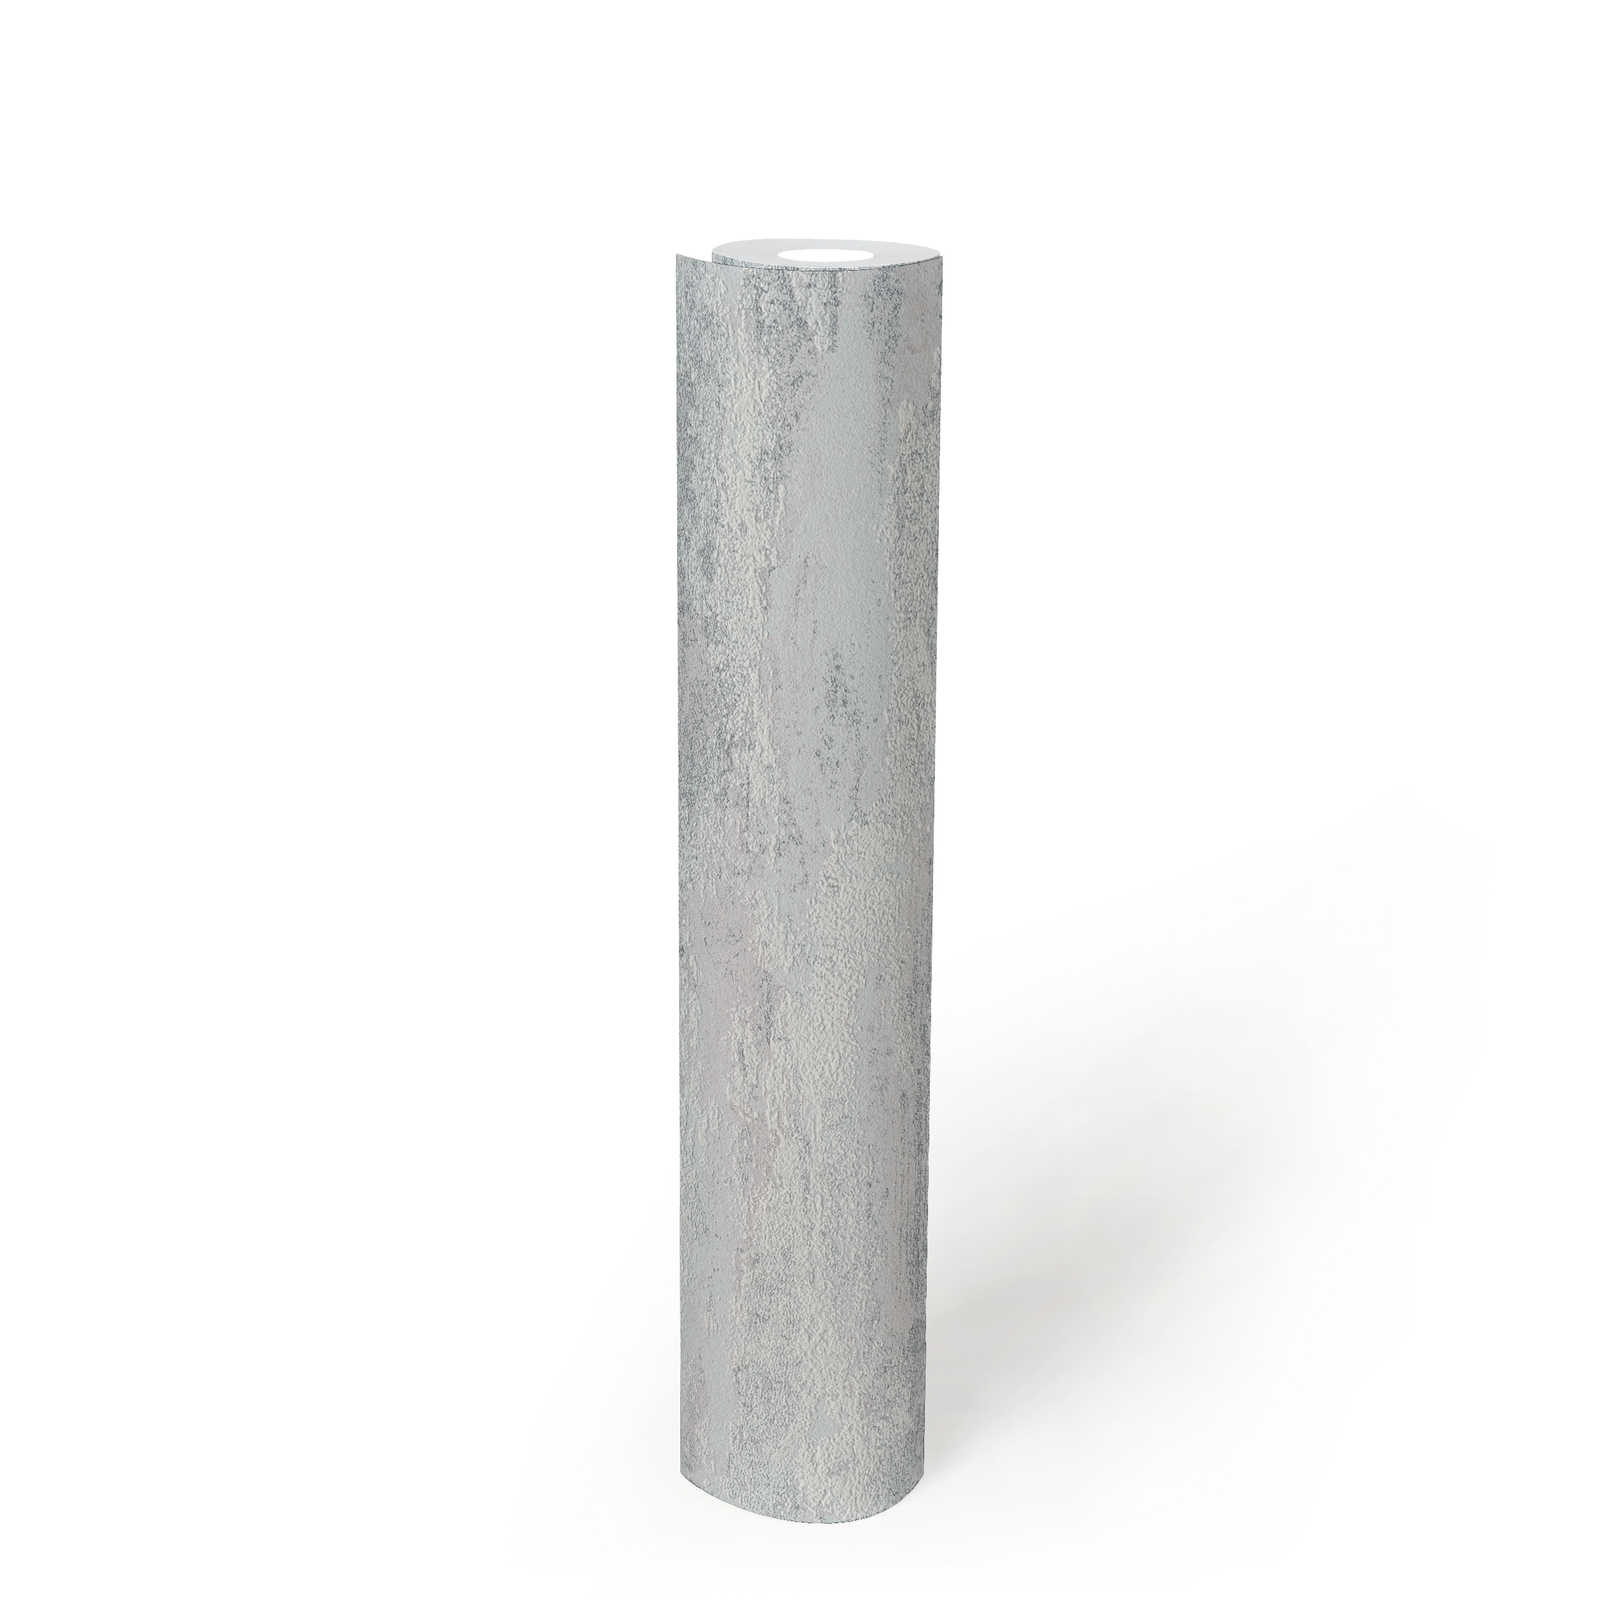             Onderlaag behang in een gevlekt licht golfpatroon - grijs, zilver
        